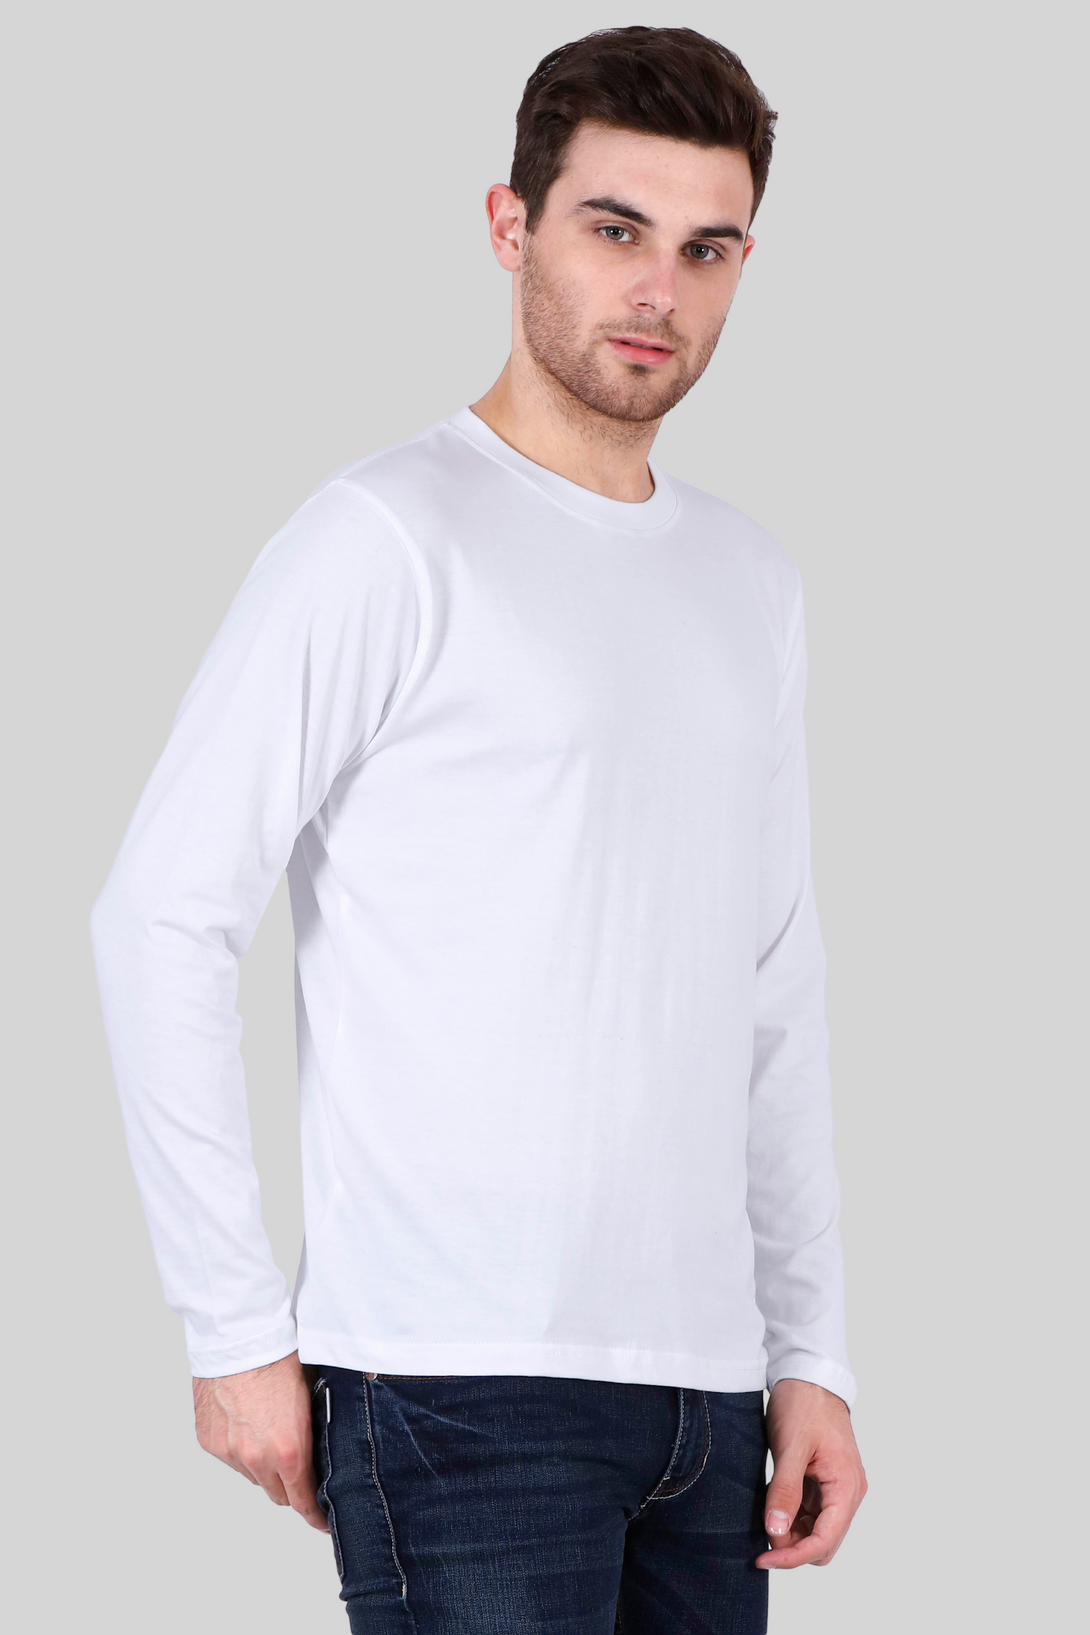 White Full Sleeve T-Shirt For Men - WowWaves - 6